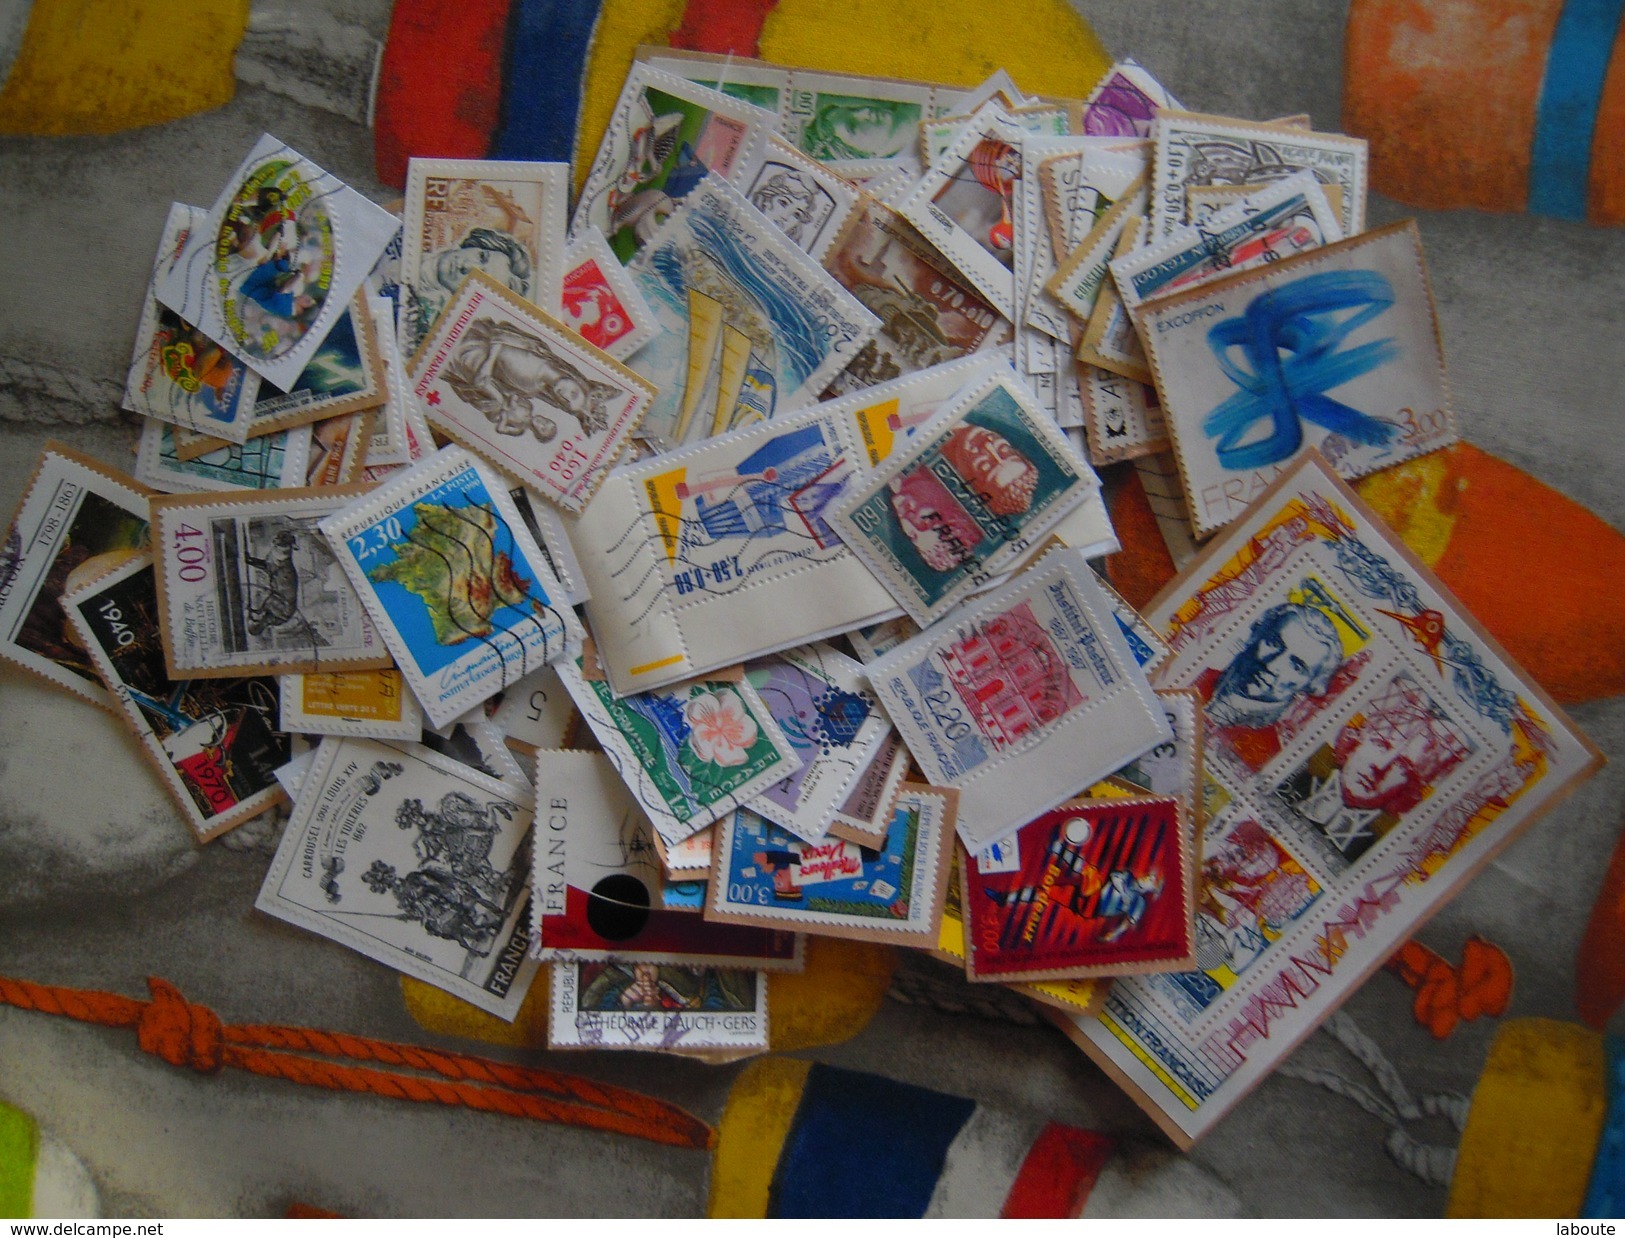 FRANCE - Collection de timbres - Plus de 1.200 timbres - A voir -  !!!!!!!